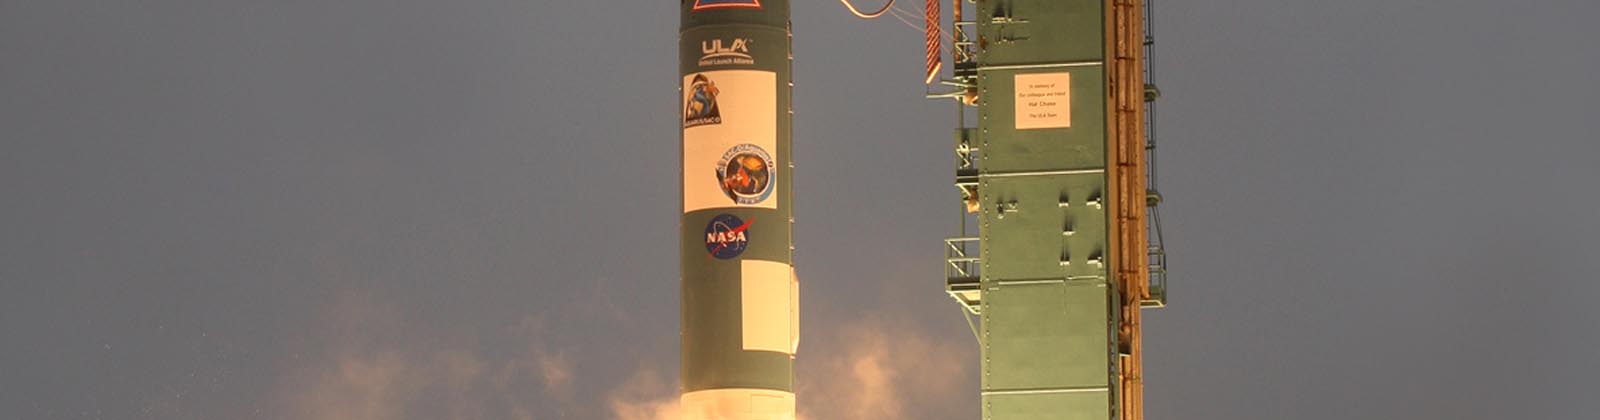 Lancement fusée Delta - satellite Aquarius